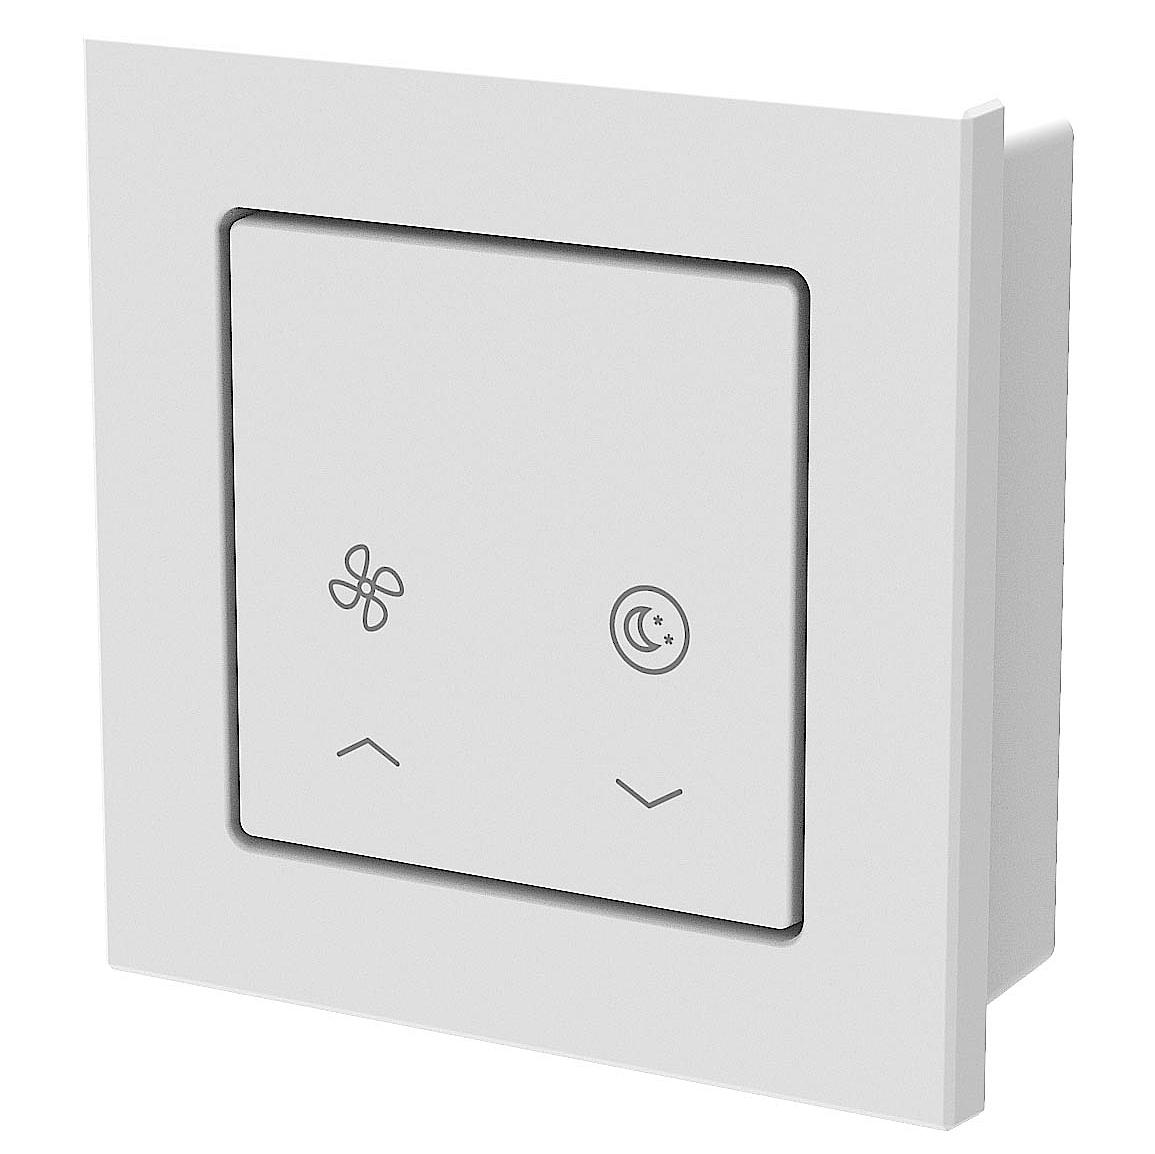 x-well Dezentrale Wohnraumlüftung Bedienelement Bluetooth Taster.